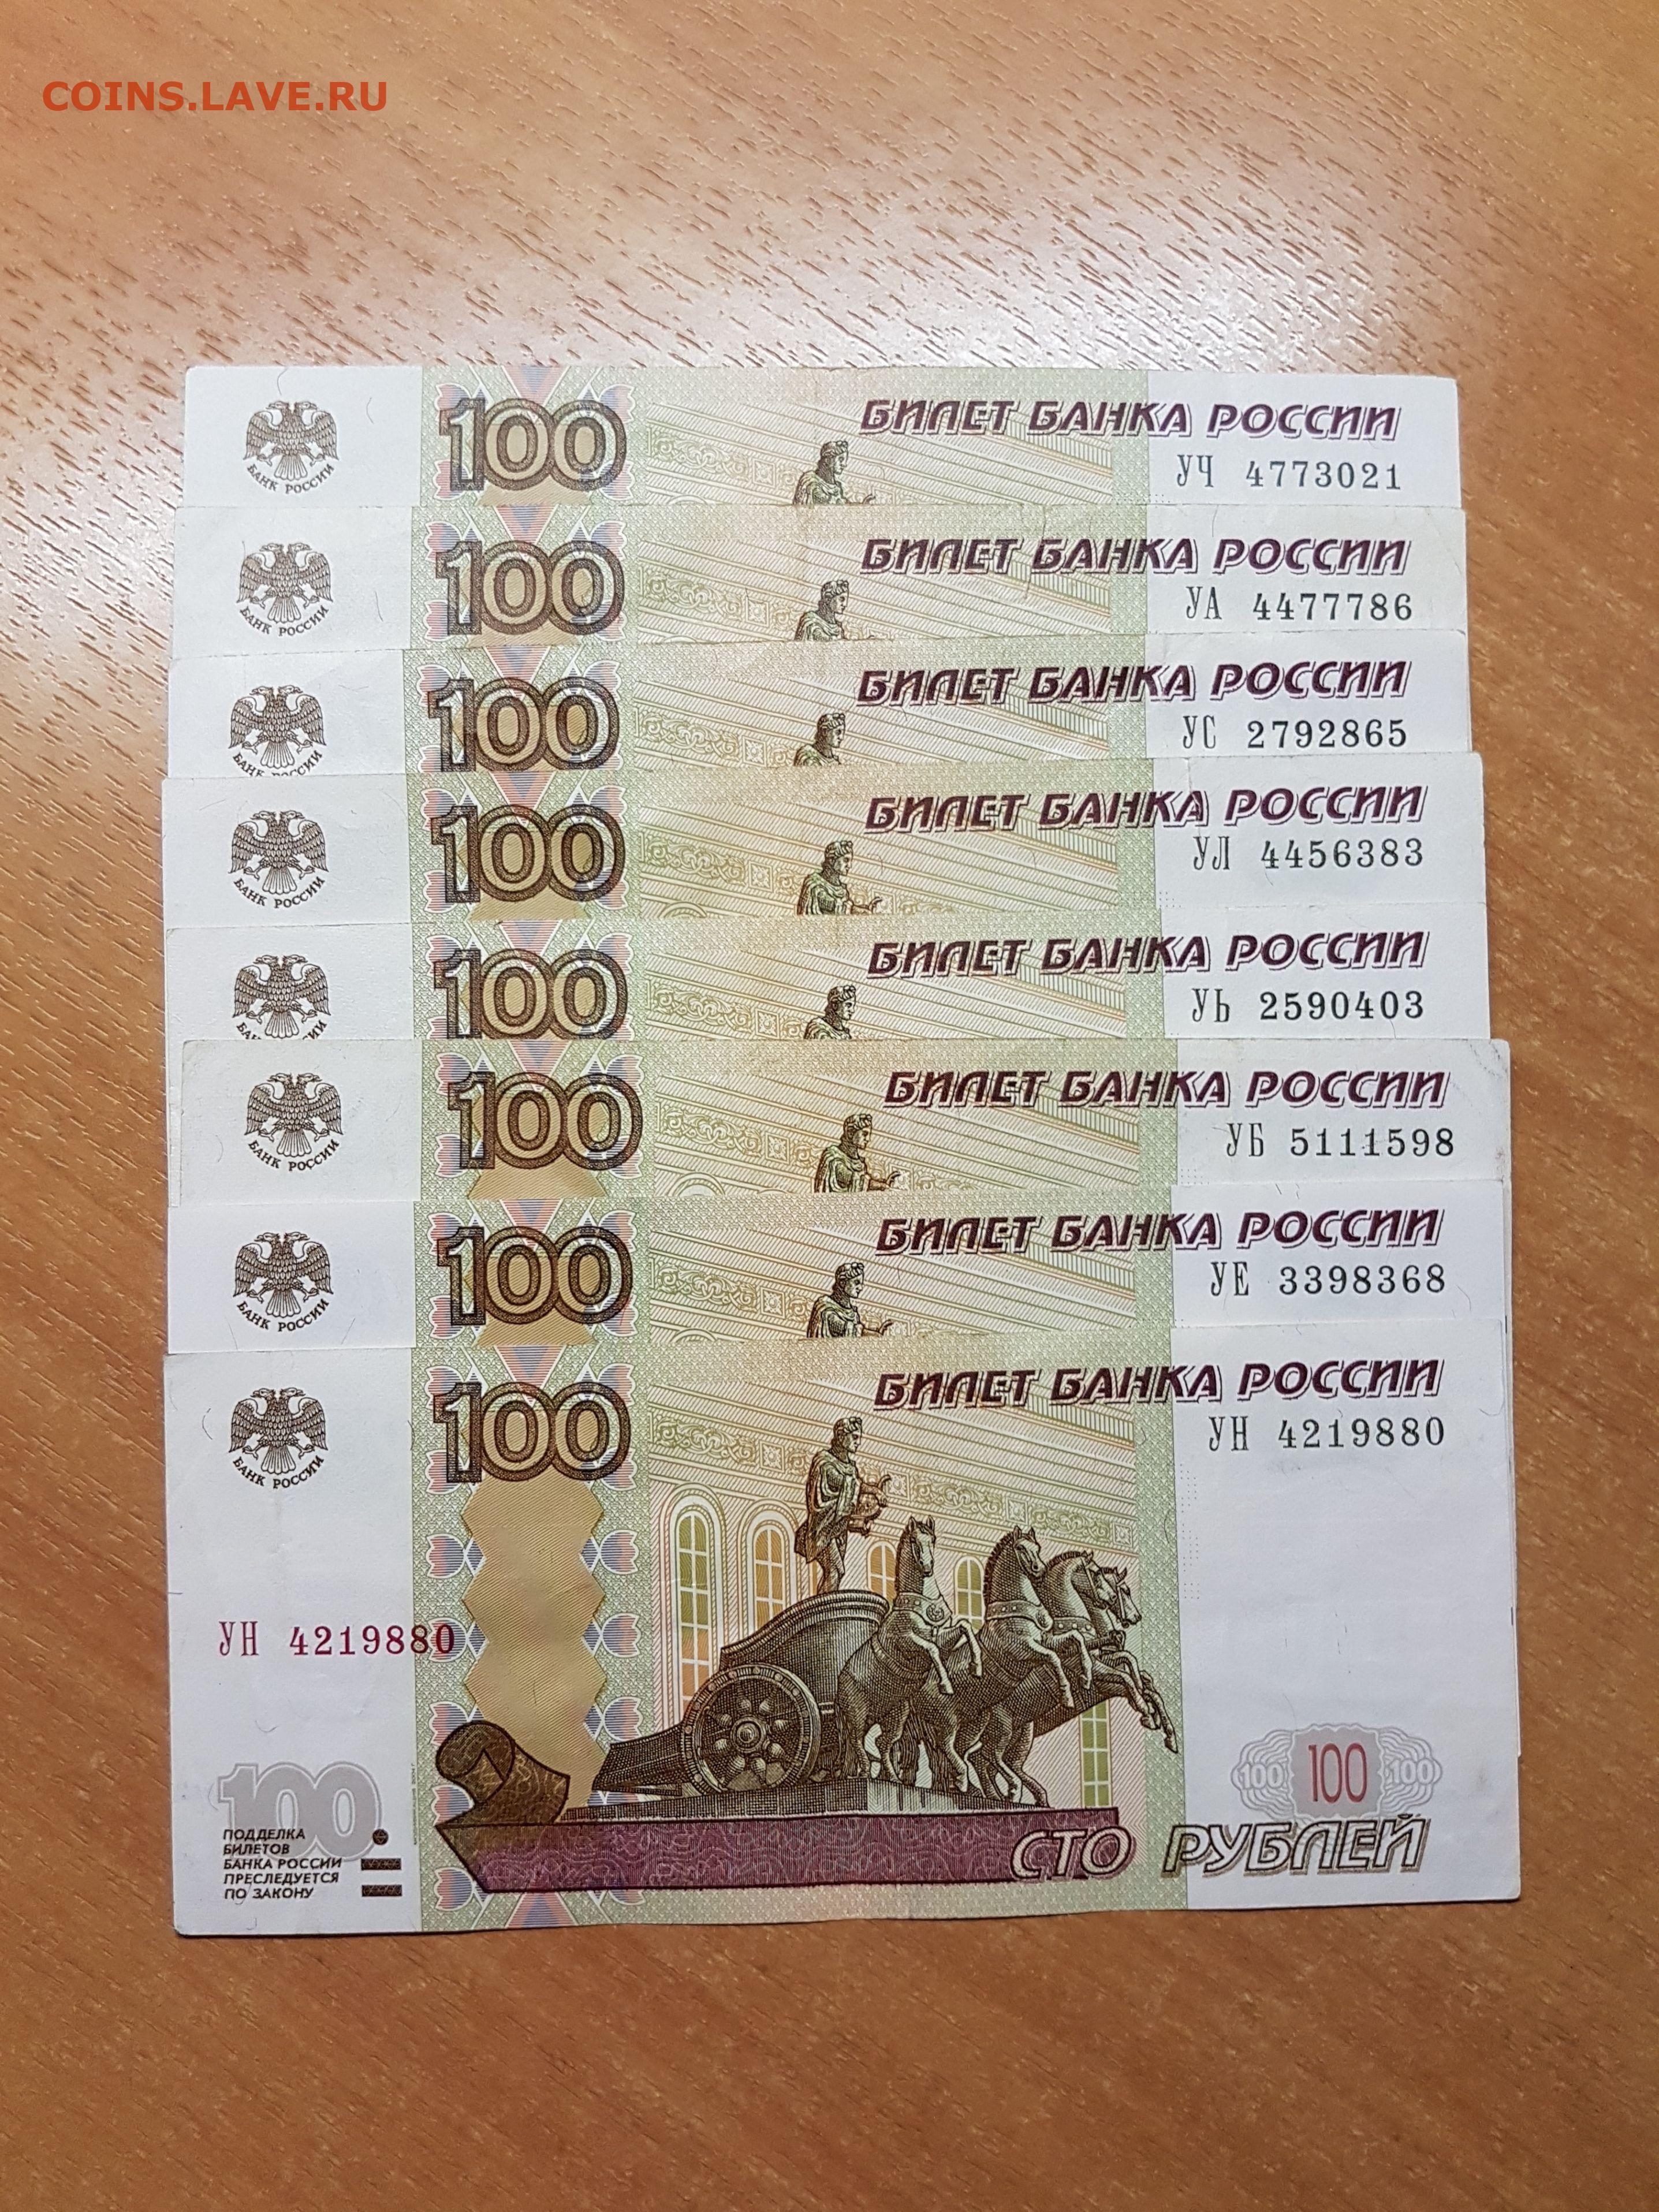 Цены редких купюр. 100 Рублей. 100 Рублей 1997.